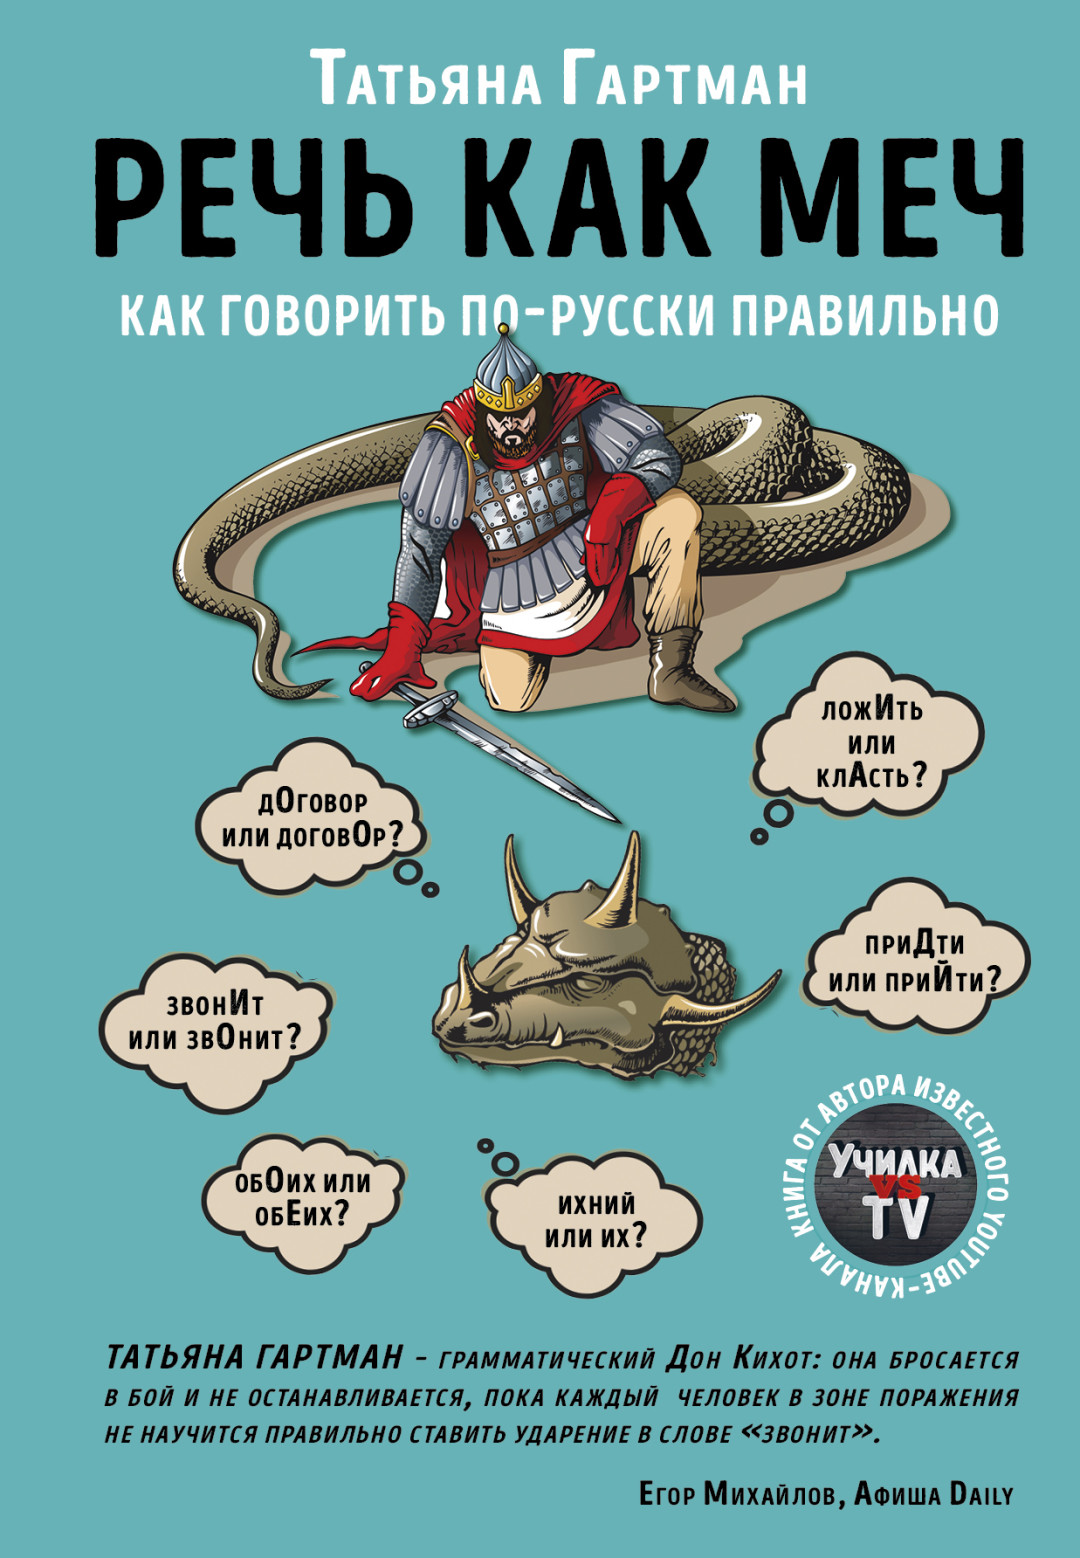 ВПР 6 класс по русскому языку в году: варианты и разбор заданий - Российский учебник